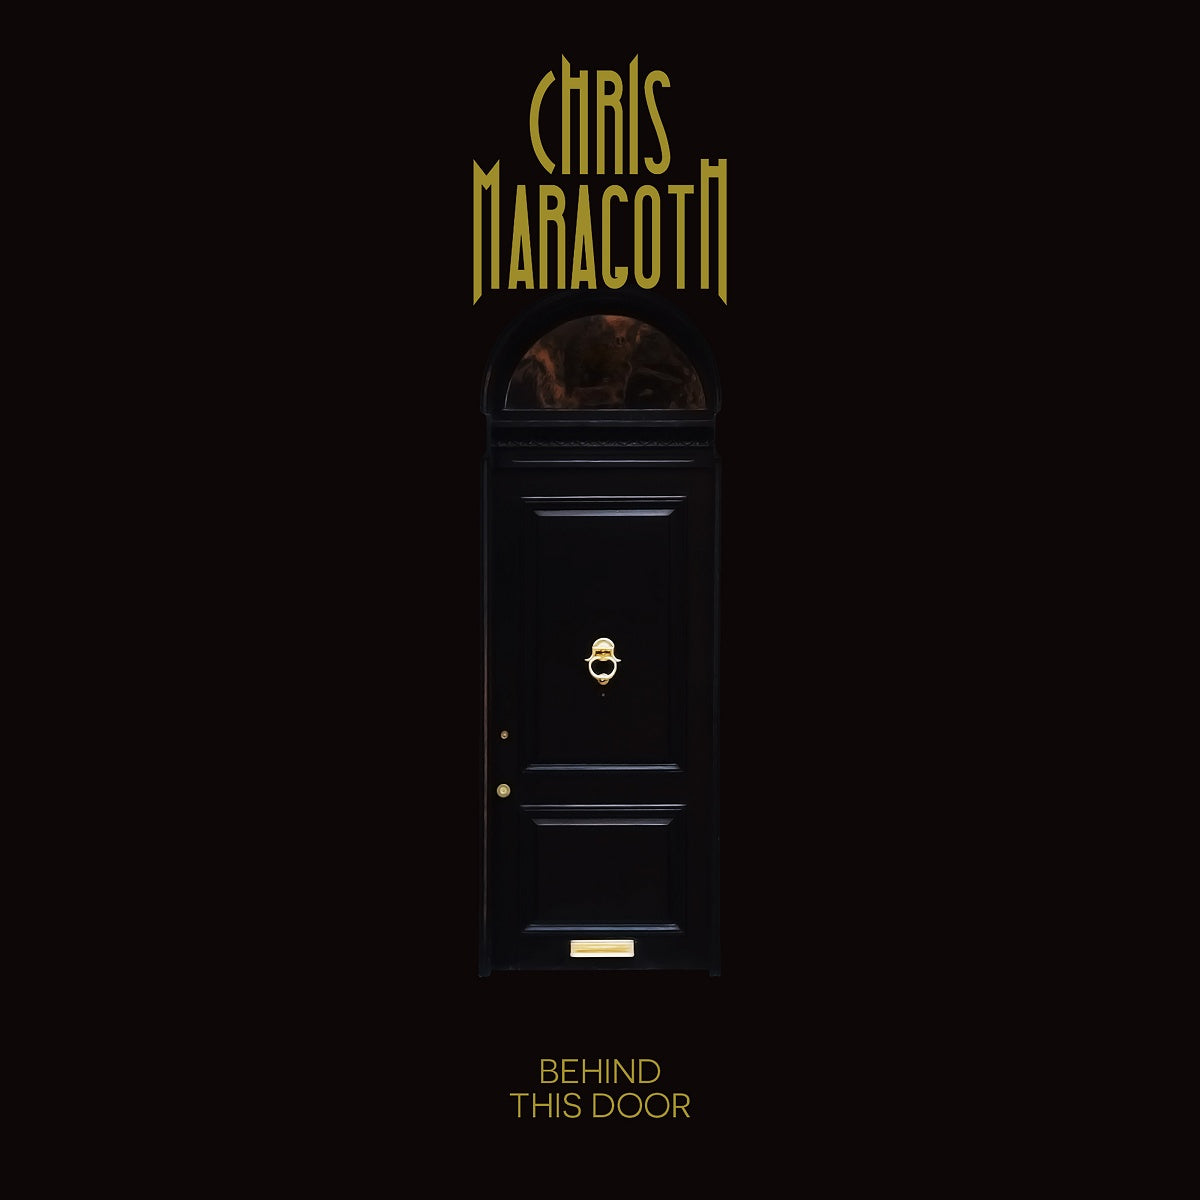 Chris Maragoth – ‘Behind This Door’